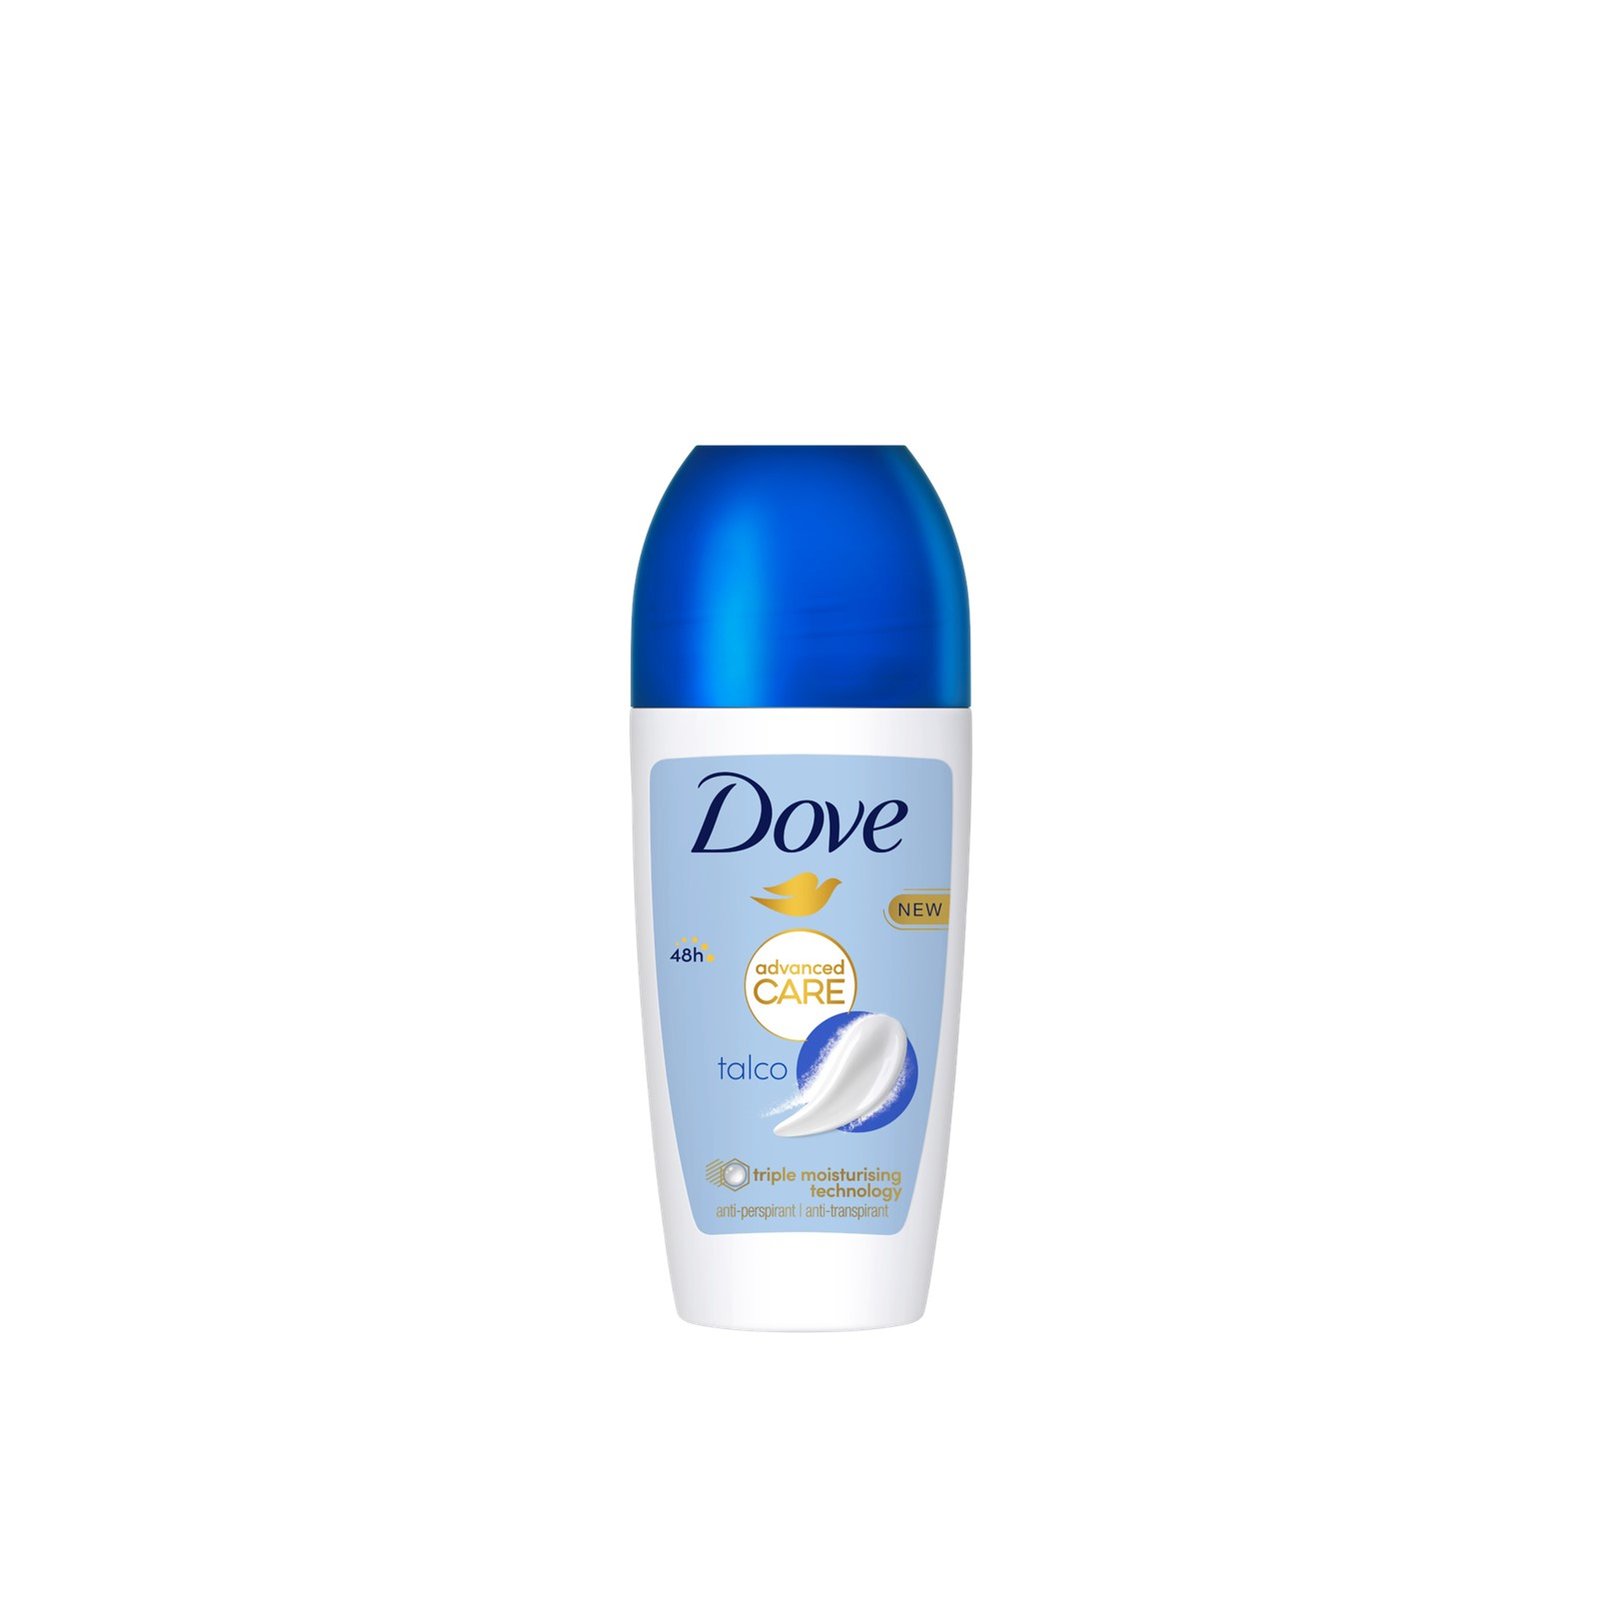 Dove Advanced Care Talco 48h Anti-Perspirant Deodorant Roll-on 50ml (1.69 fl oz)